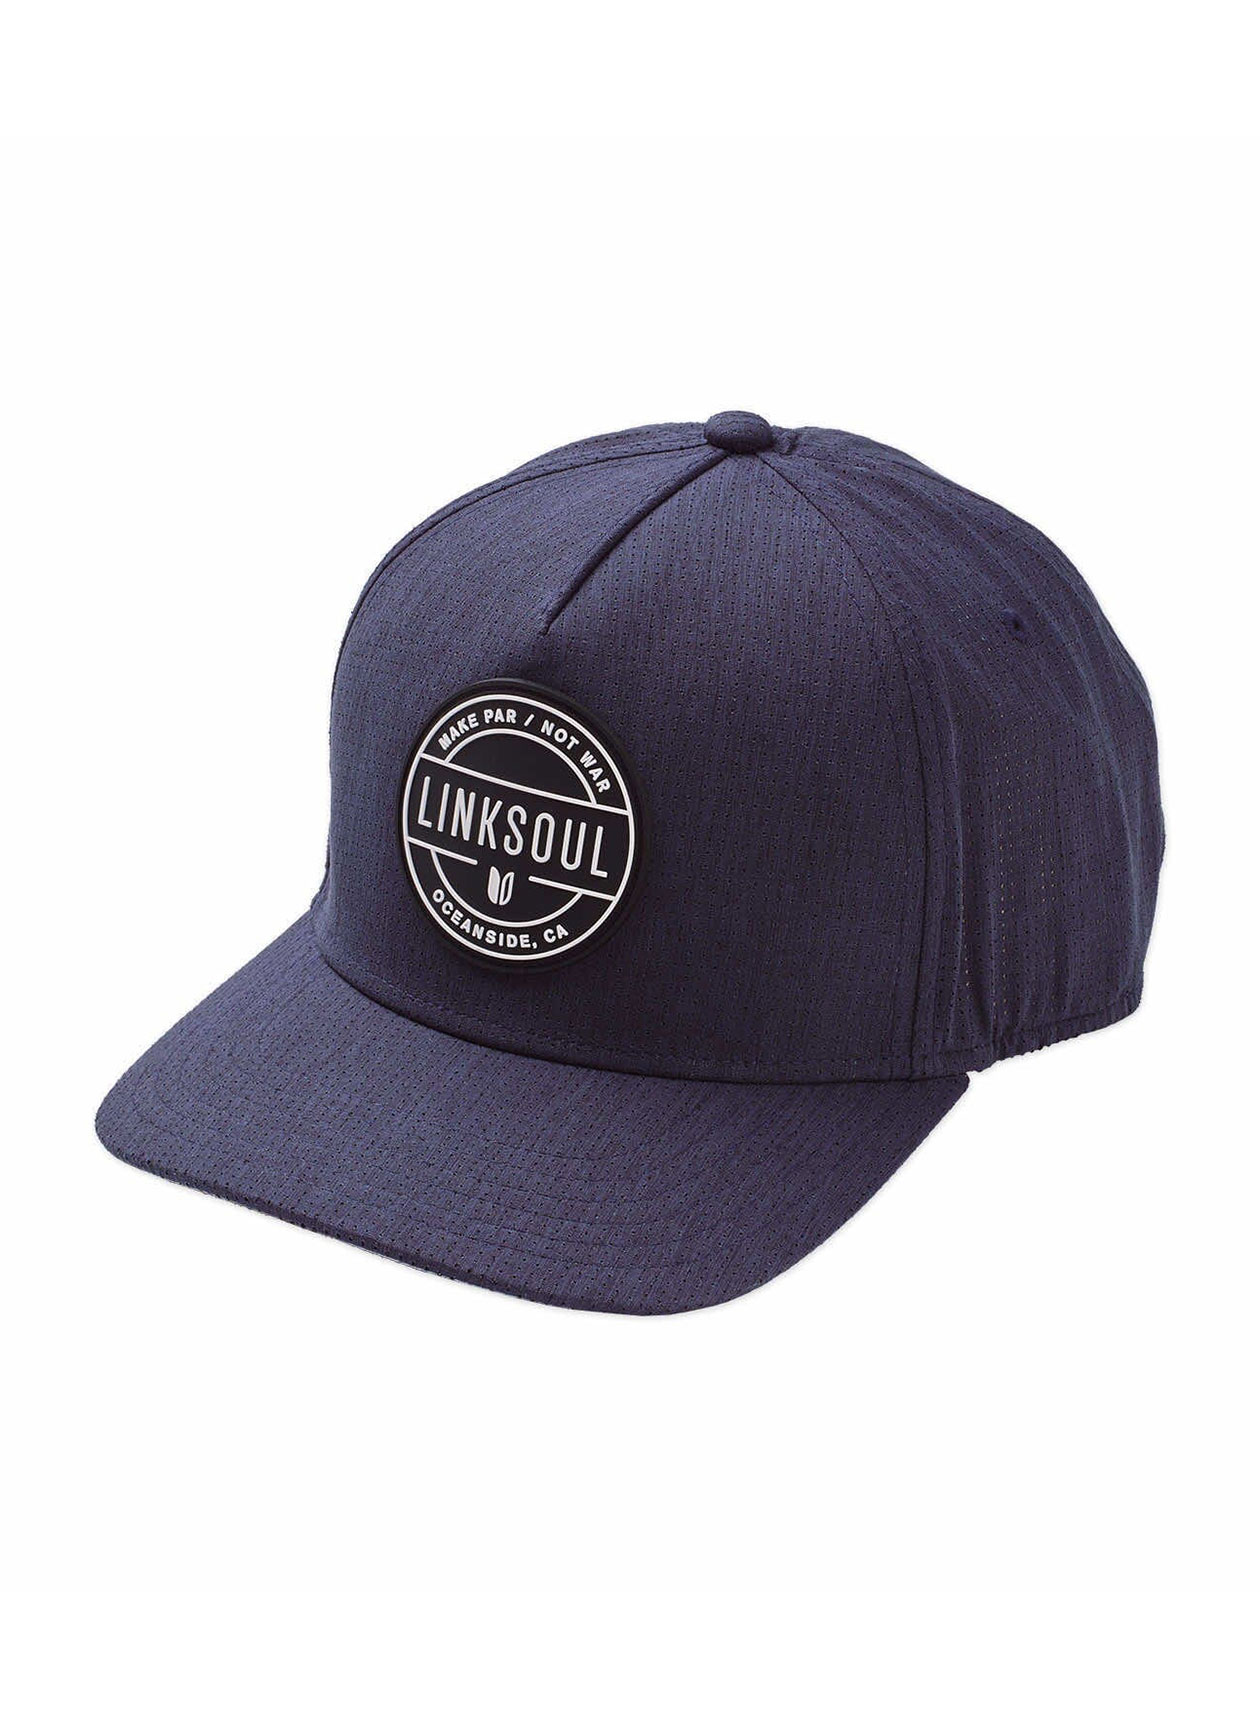 Linksoul Navy/Black/White Industrial Patch Boardwalker AC Snapback Hat